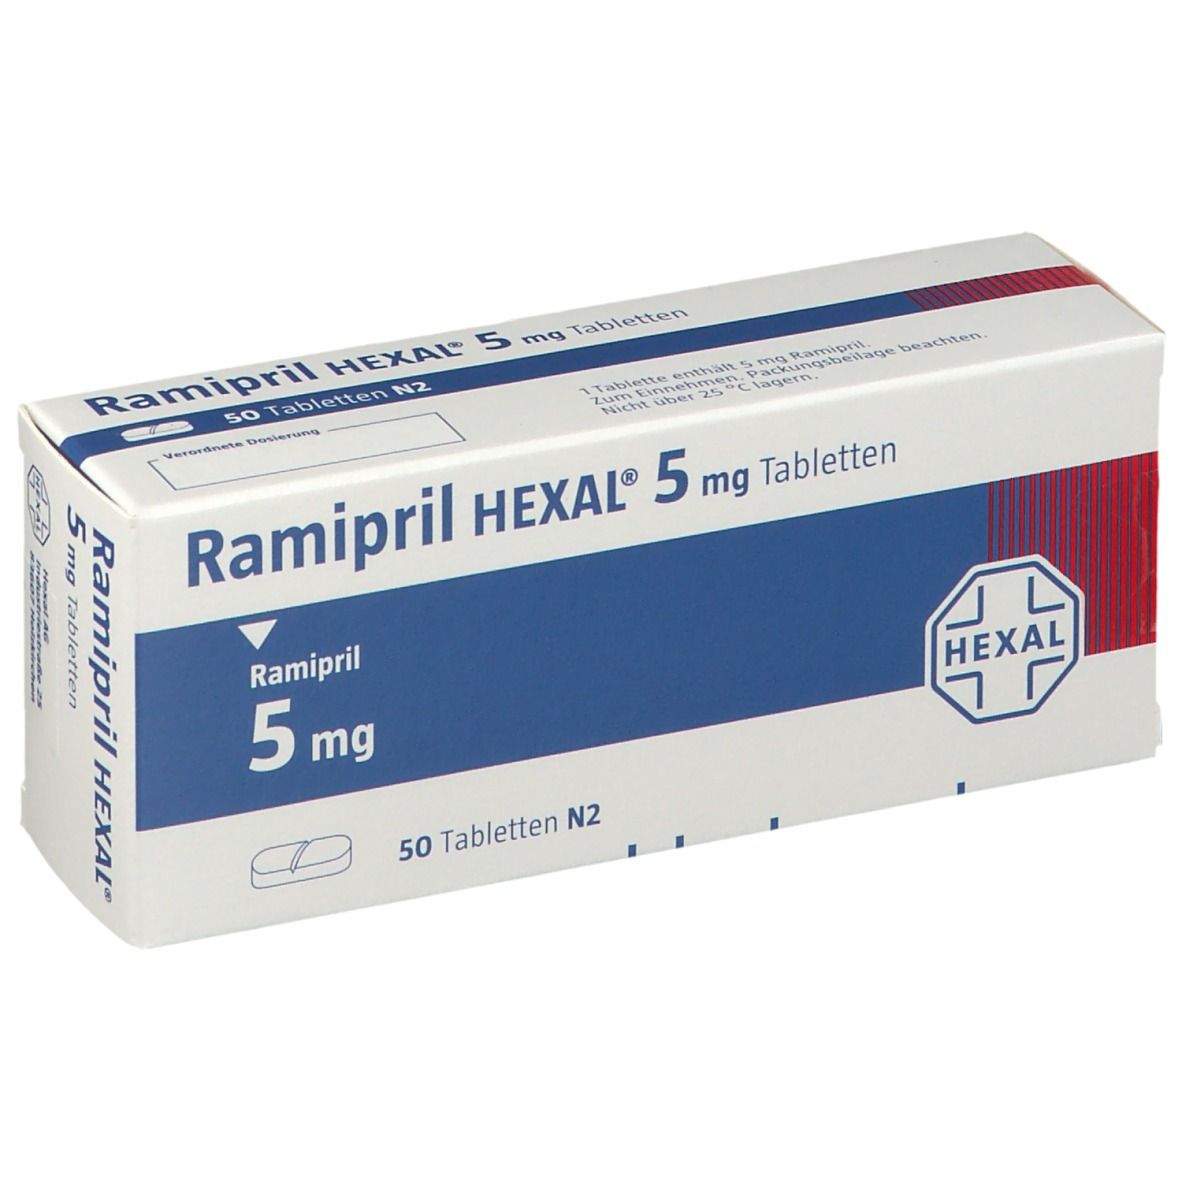 Ramipril HEXAL® 5 mg